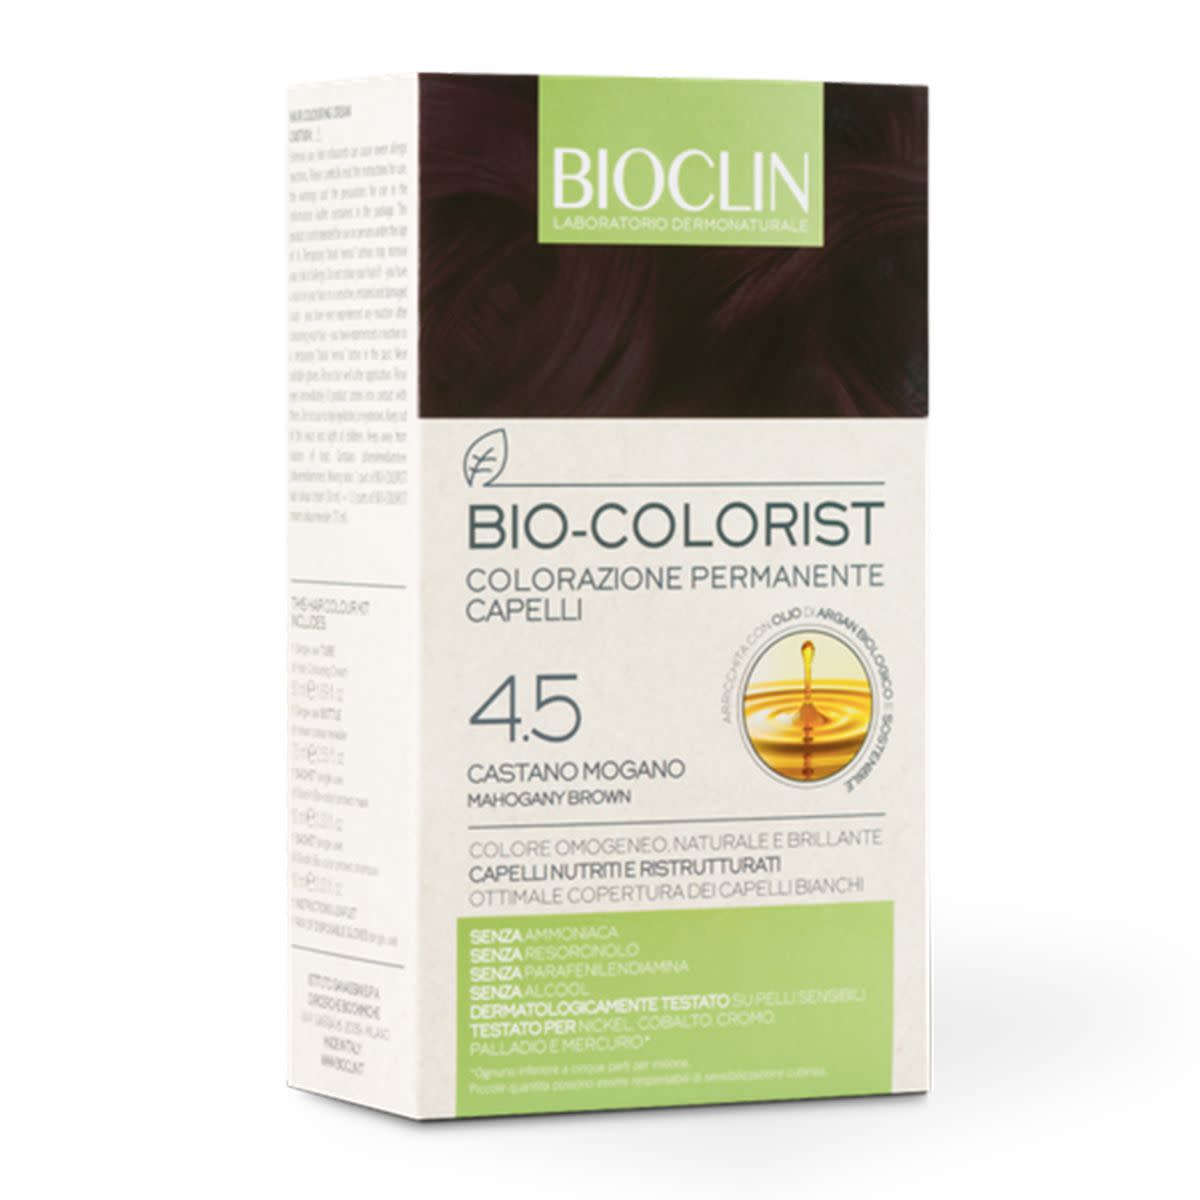 975025204 - Bioclin Bio-colorist 4.5 Castano Mogano - 4702419_2.jpg